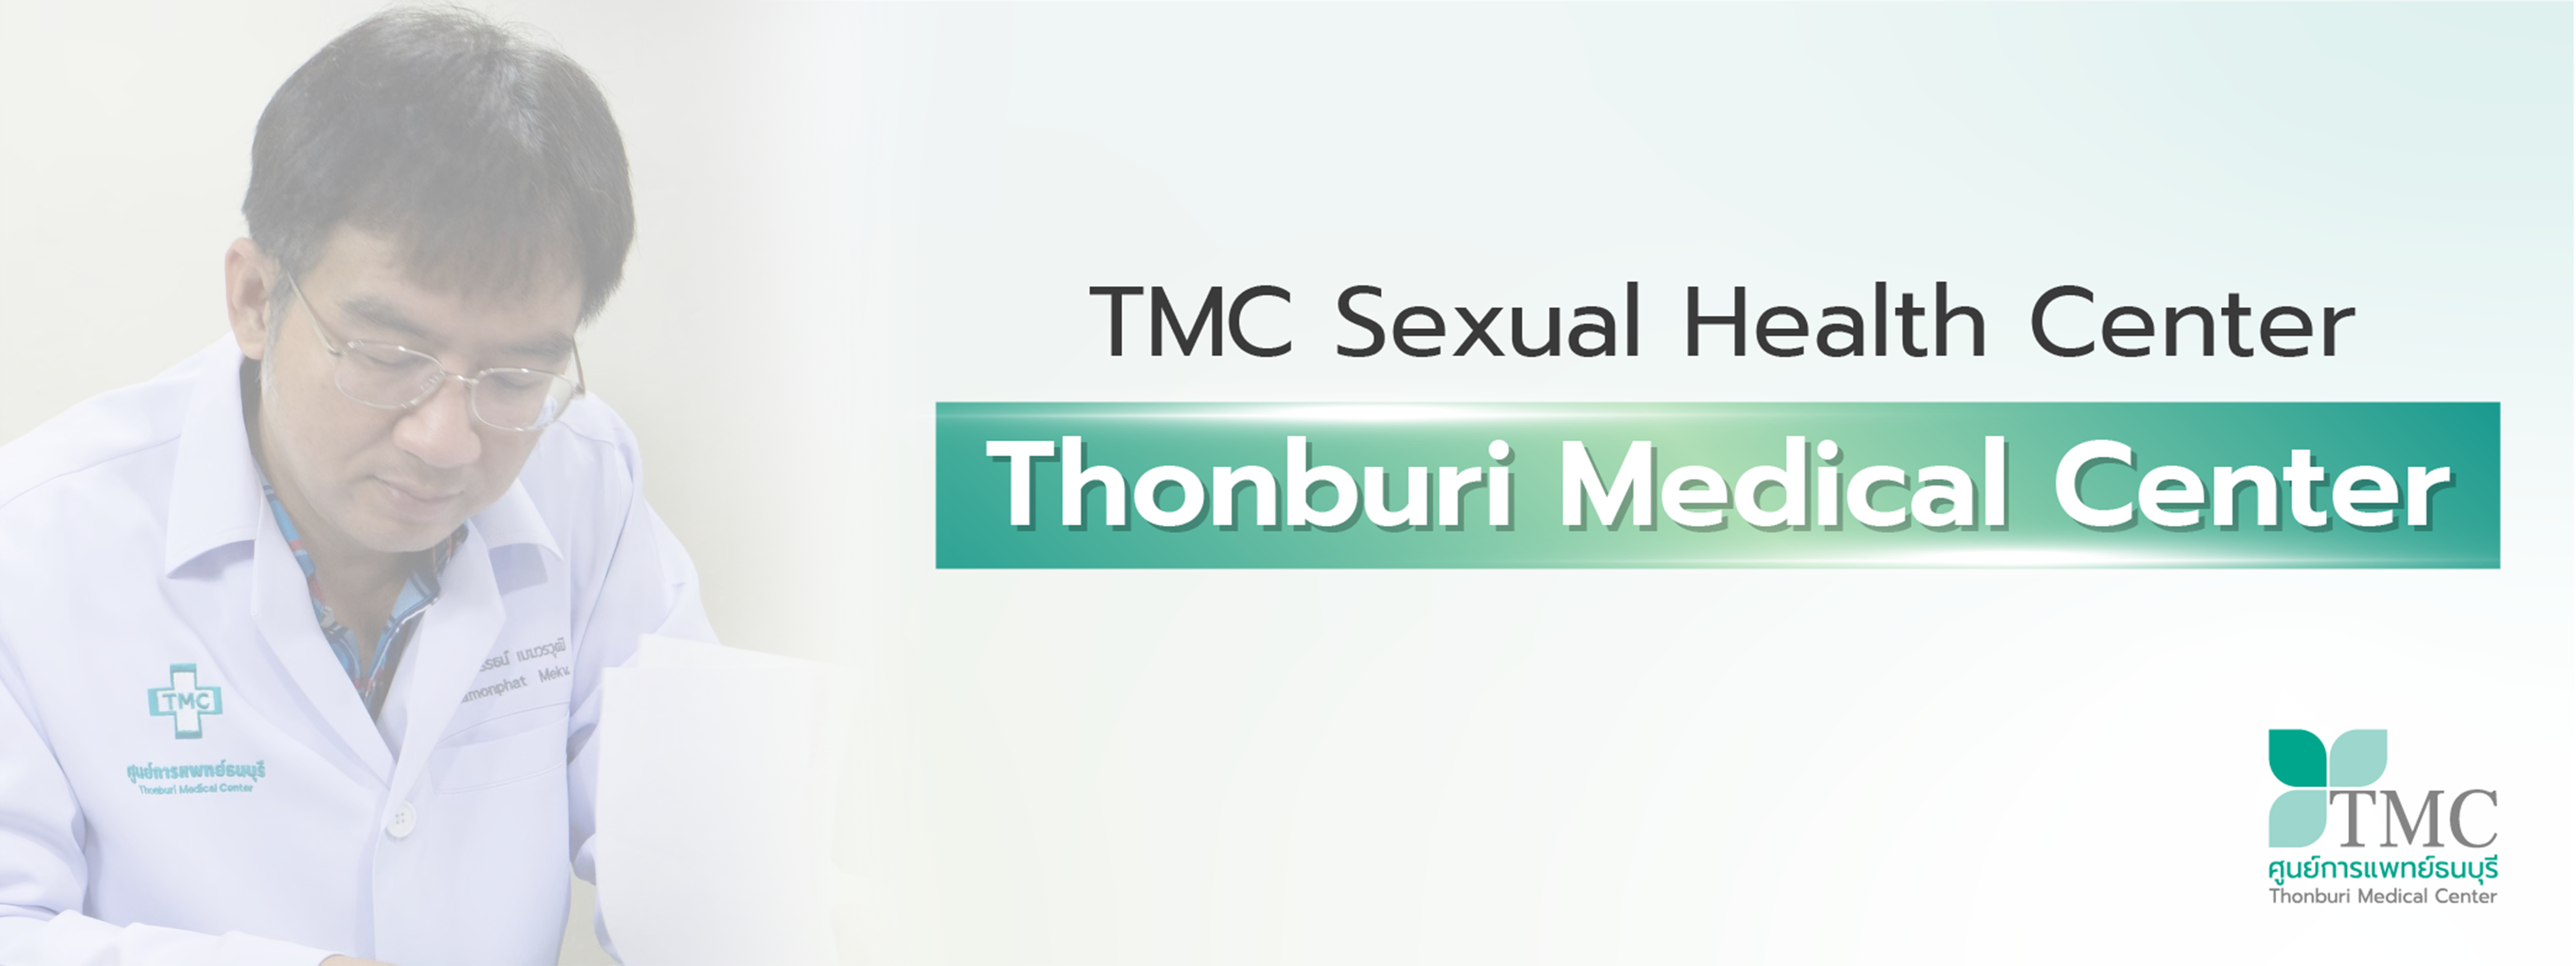 TMC Sexual Health Center